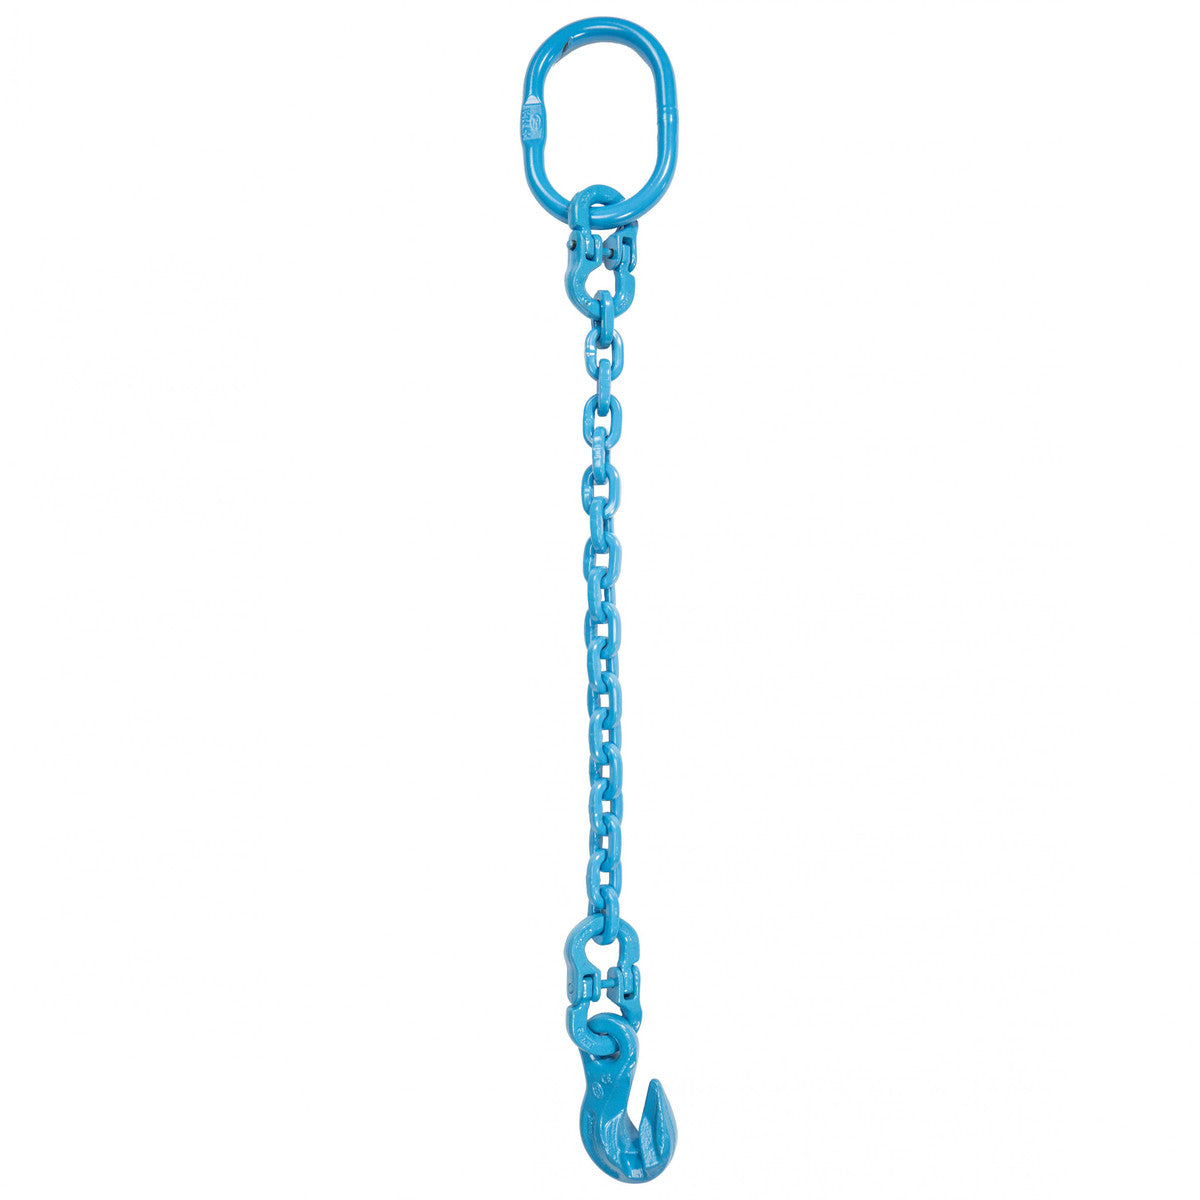 9/32" x 8' - Pewag Single Leg Chain Sling w/ Grab Hook - Grade 120